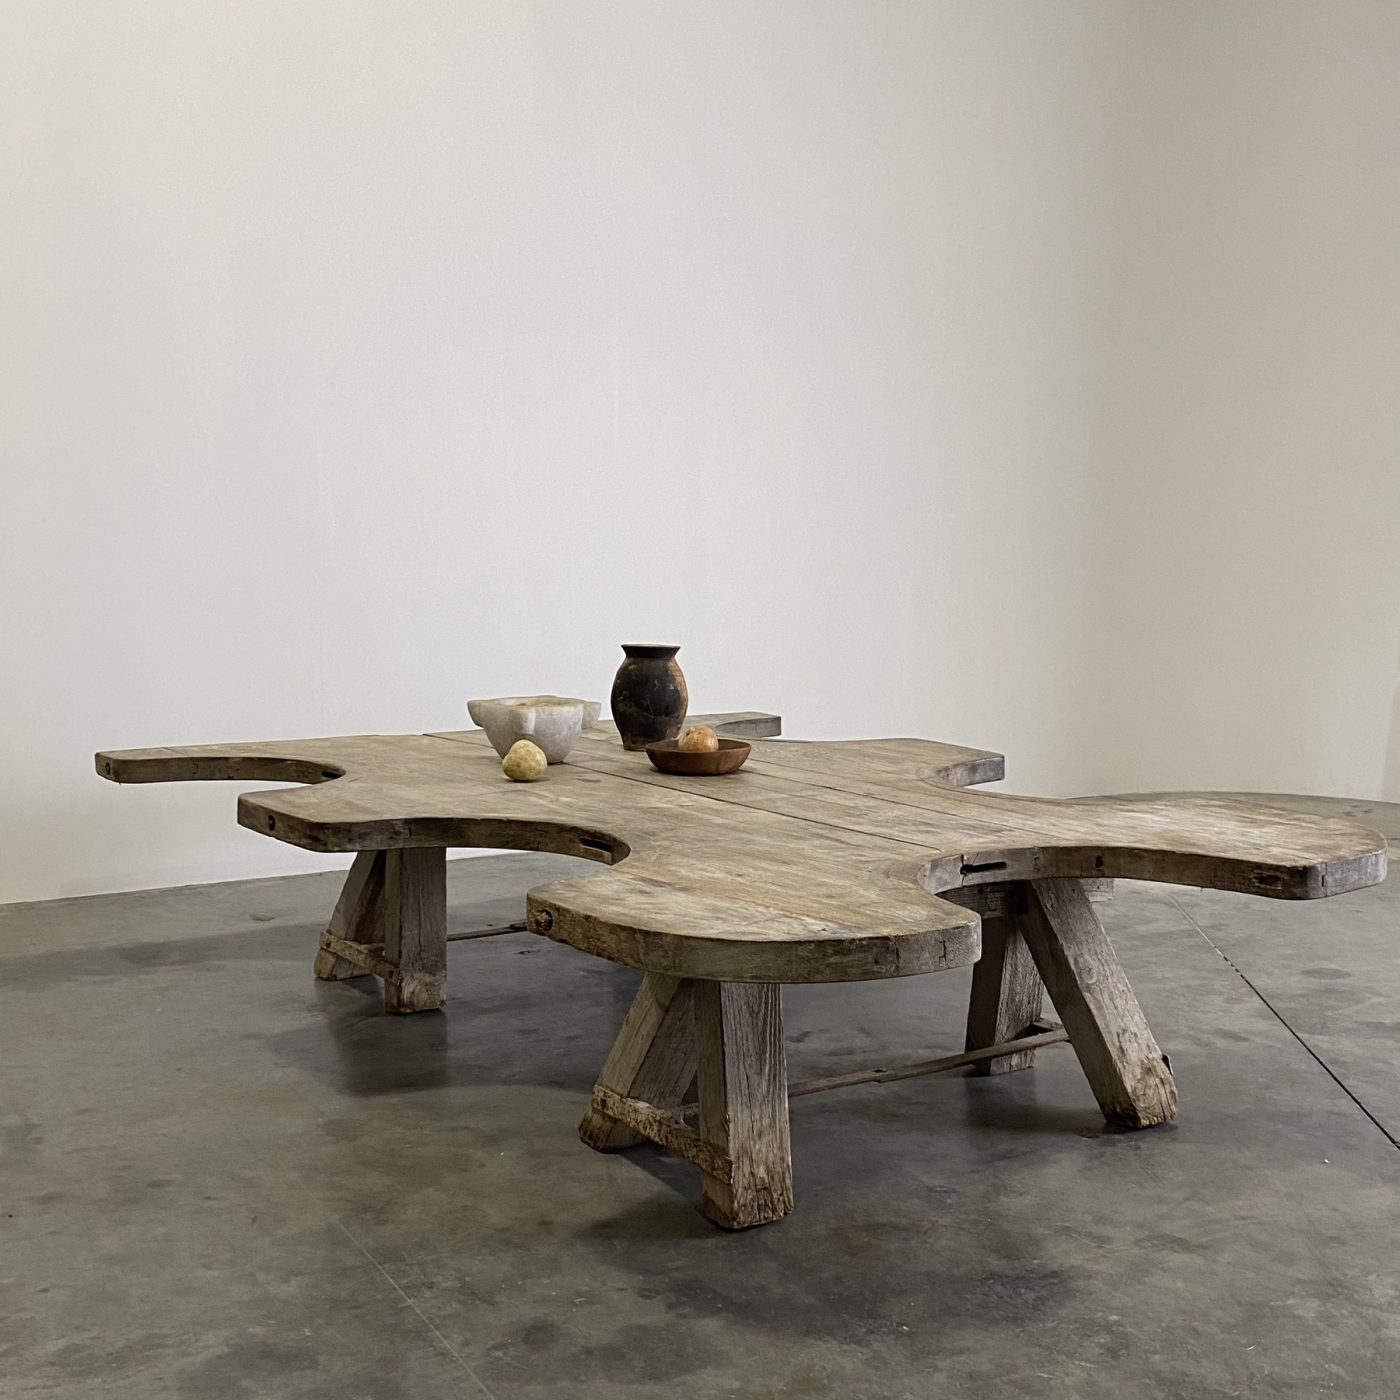 objet-vagabond-coffee-table0002